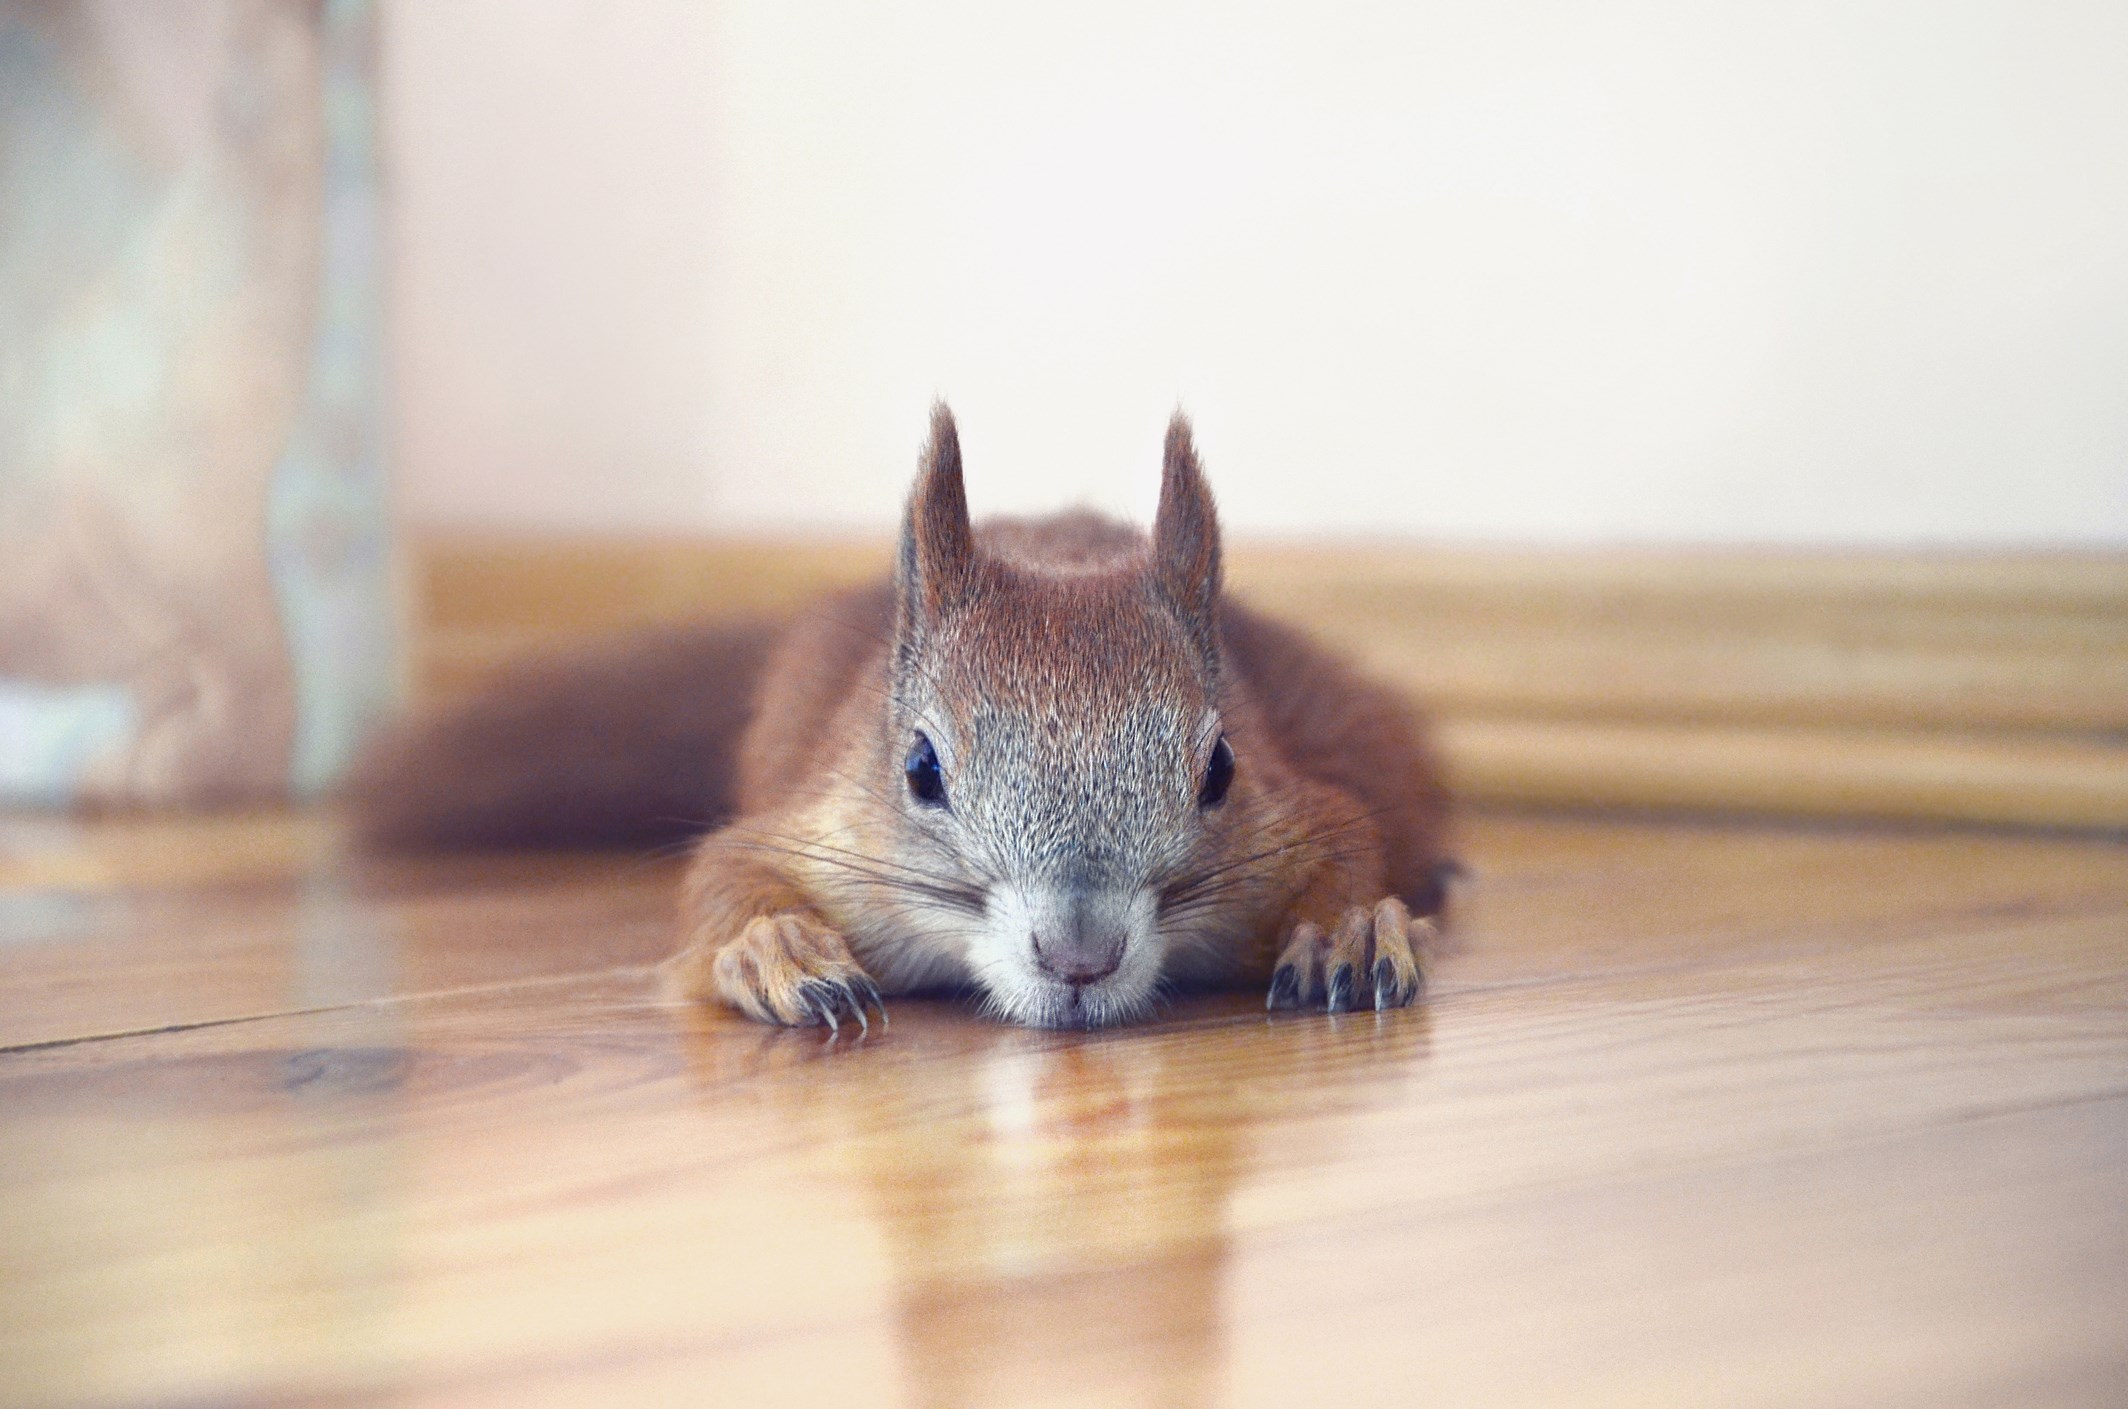 Squirrel lying on wooden floor